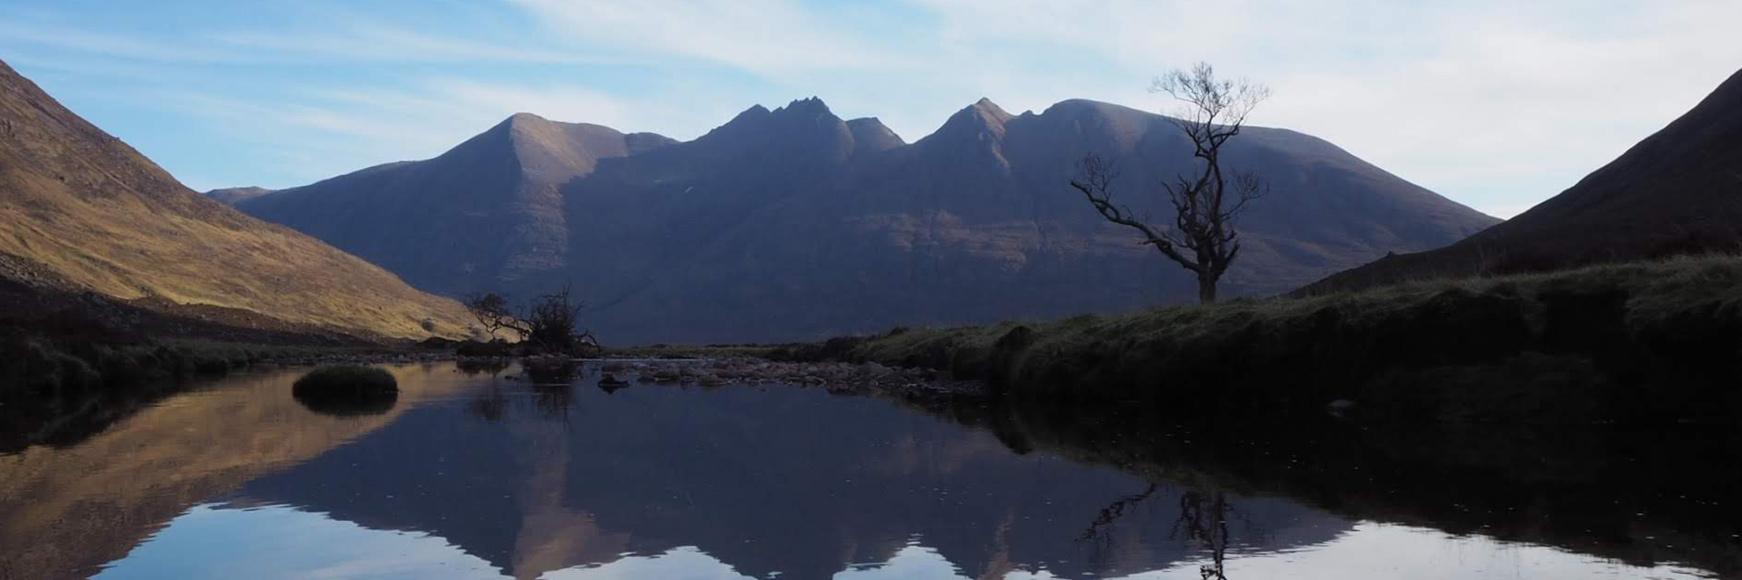 5 classic Scottish ridge walks banner image